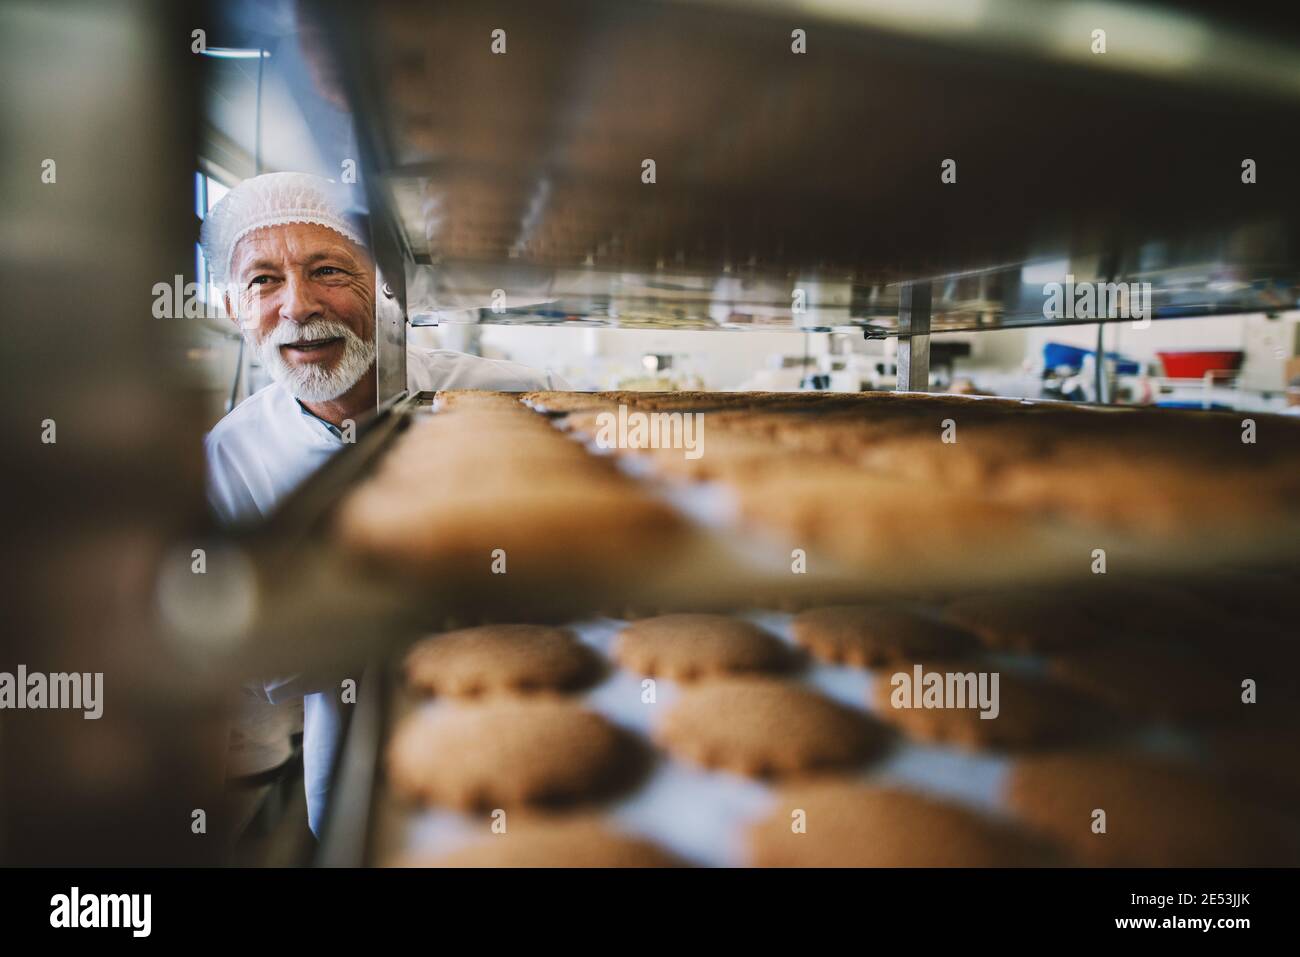 Photo d'homme boulanger adulte professionnel en uniforme de travail blanc. Debout devant les étagères avec des petits gâteaux frais. Banque D'Images